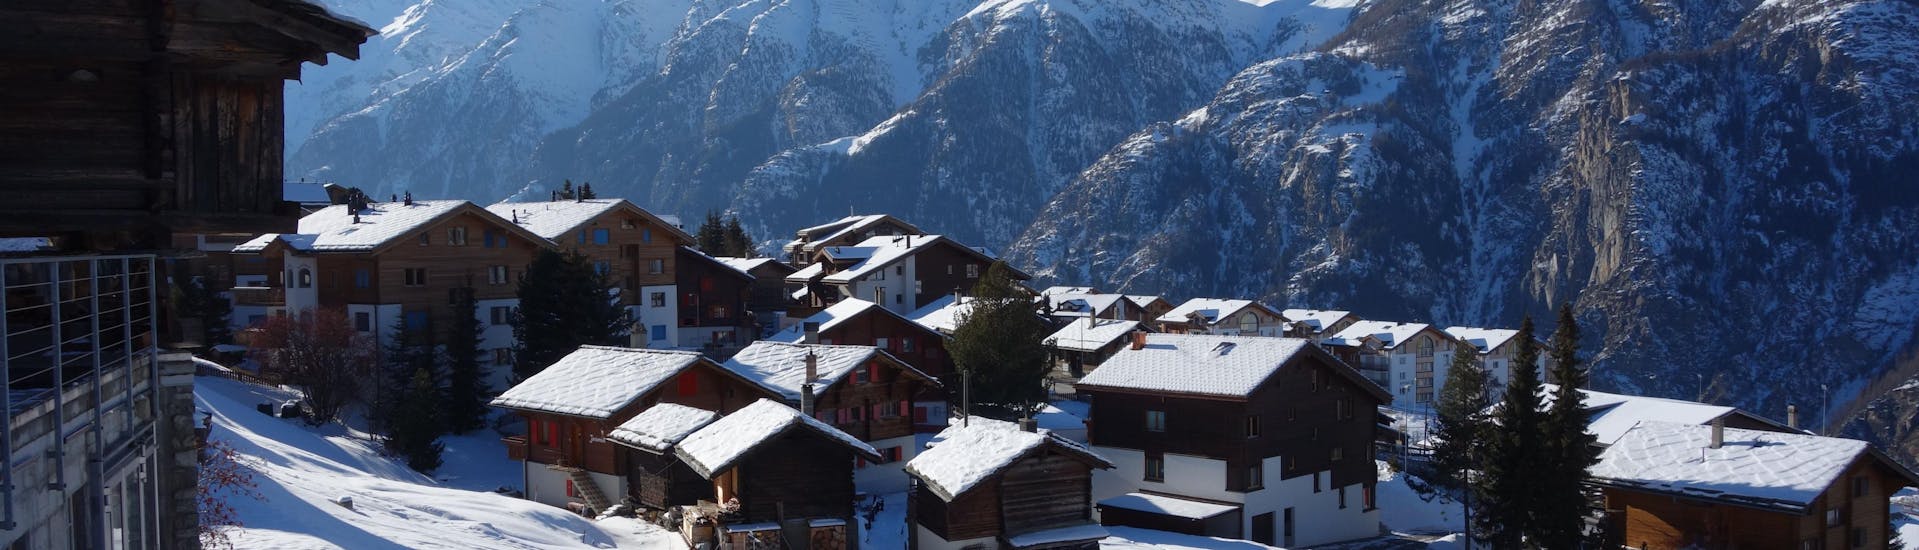 Een deel van Grächen, Zwitserland bedekt met sneeuw, vlakbij de pistes.